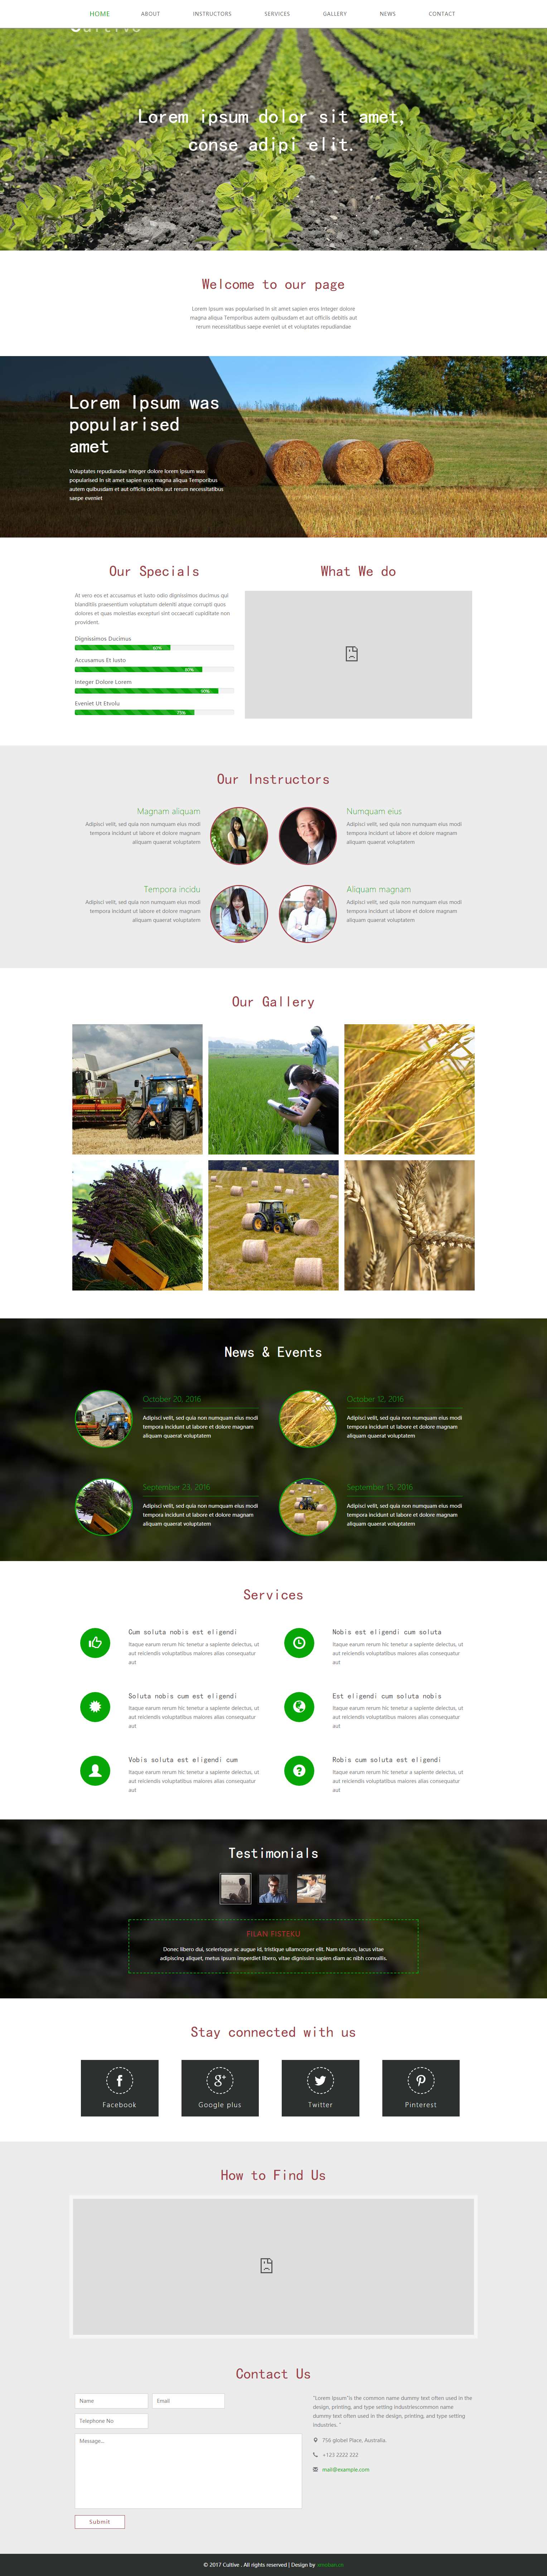 绿色欧美风格的农业种植企业网站源码下载